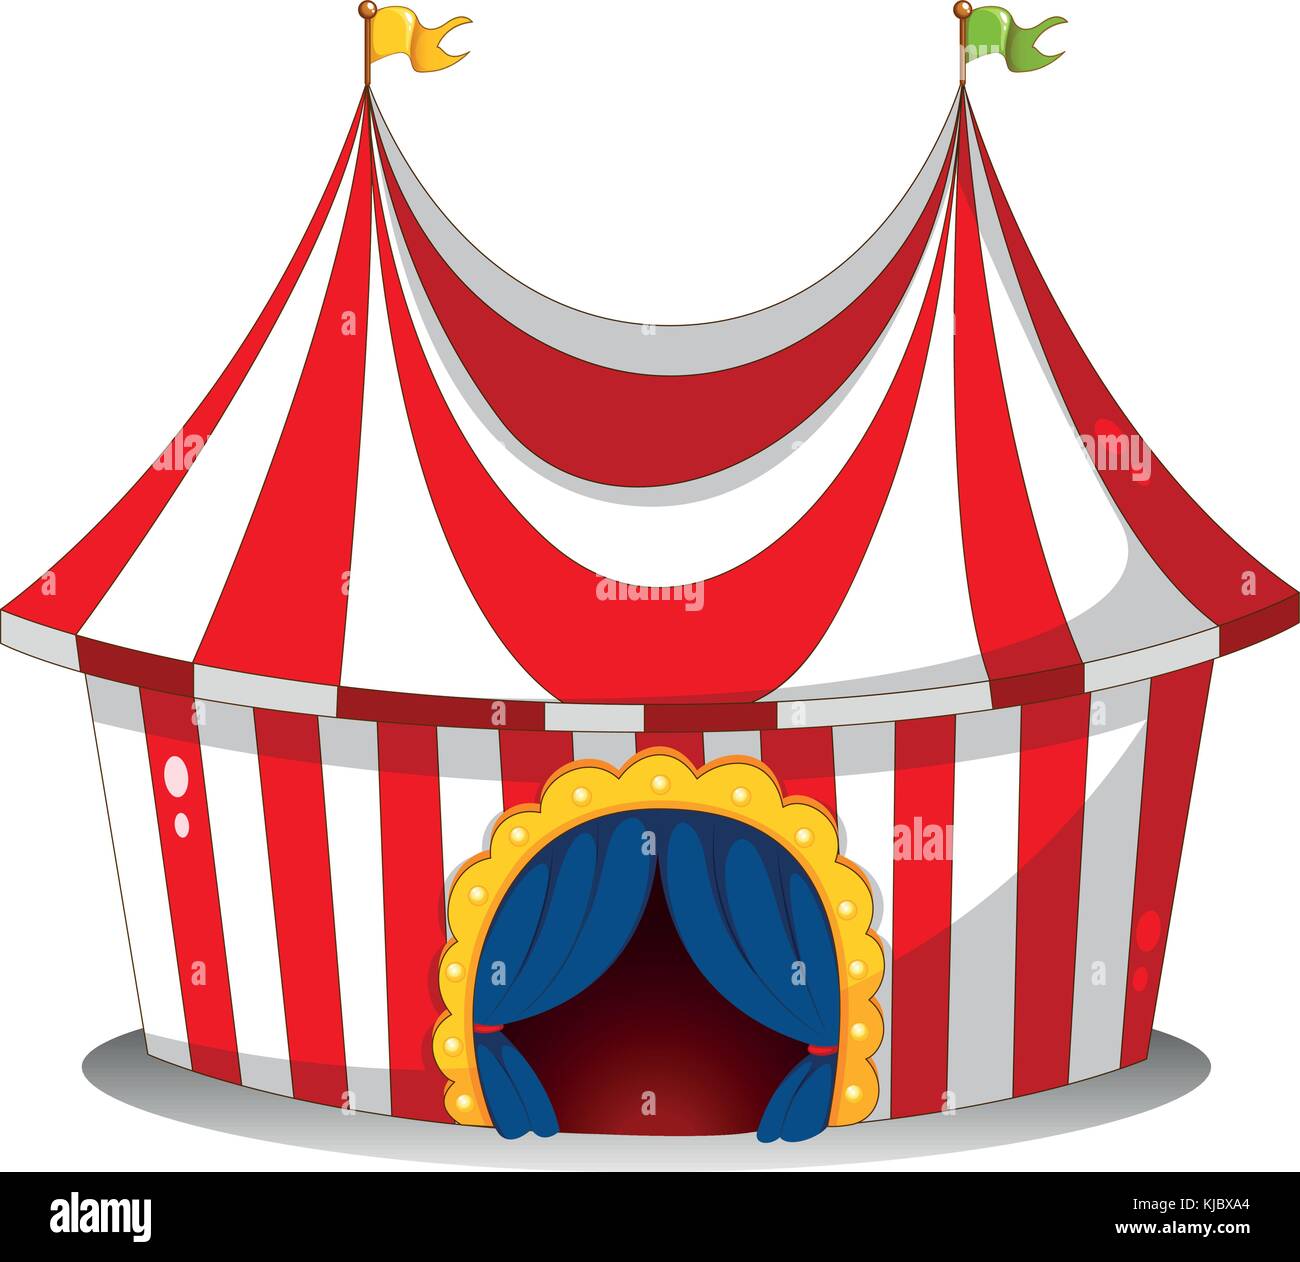 A circus tent Banque d'images vectorielles - Page 2 - Alamy